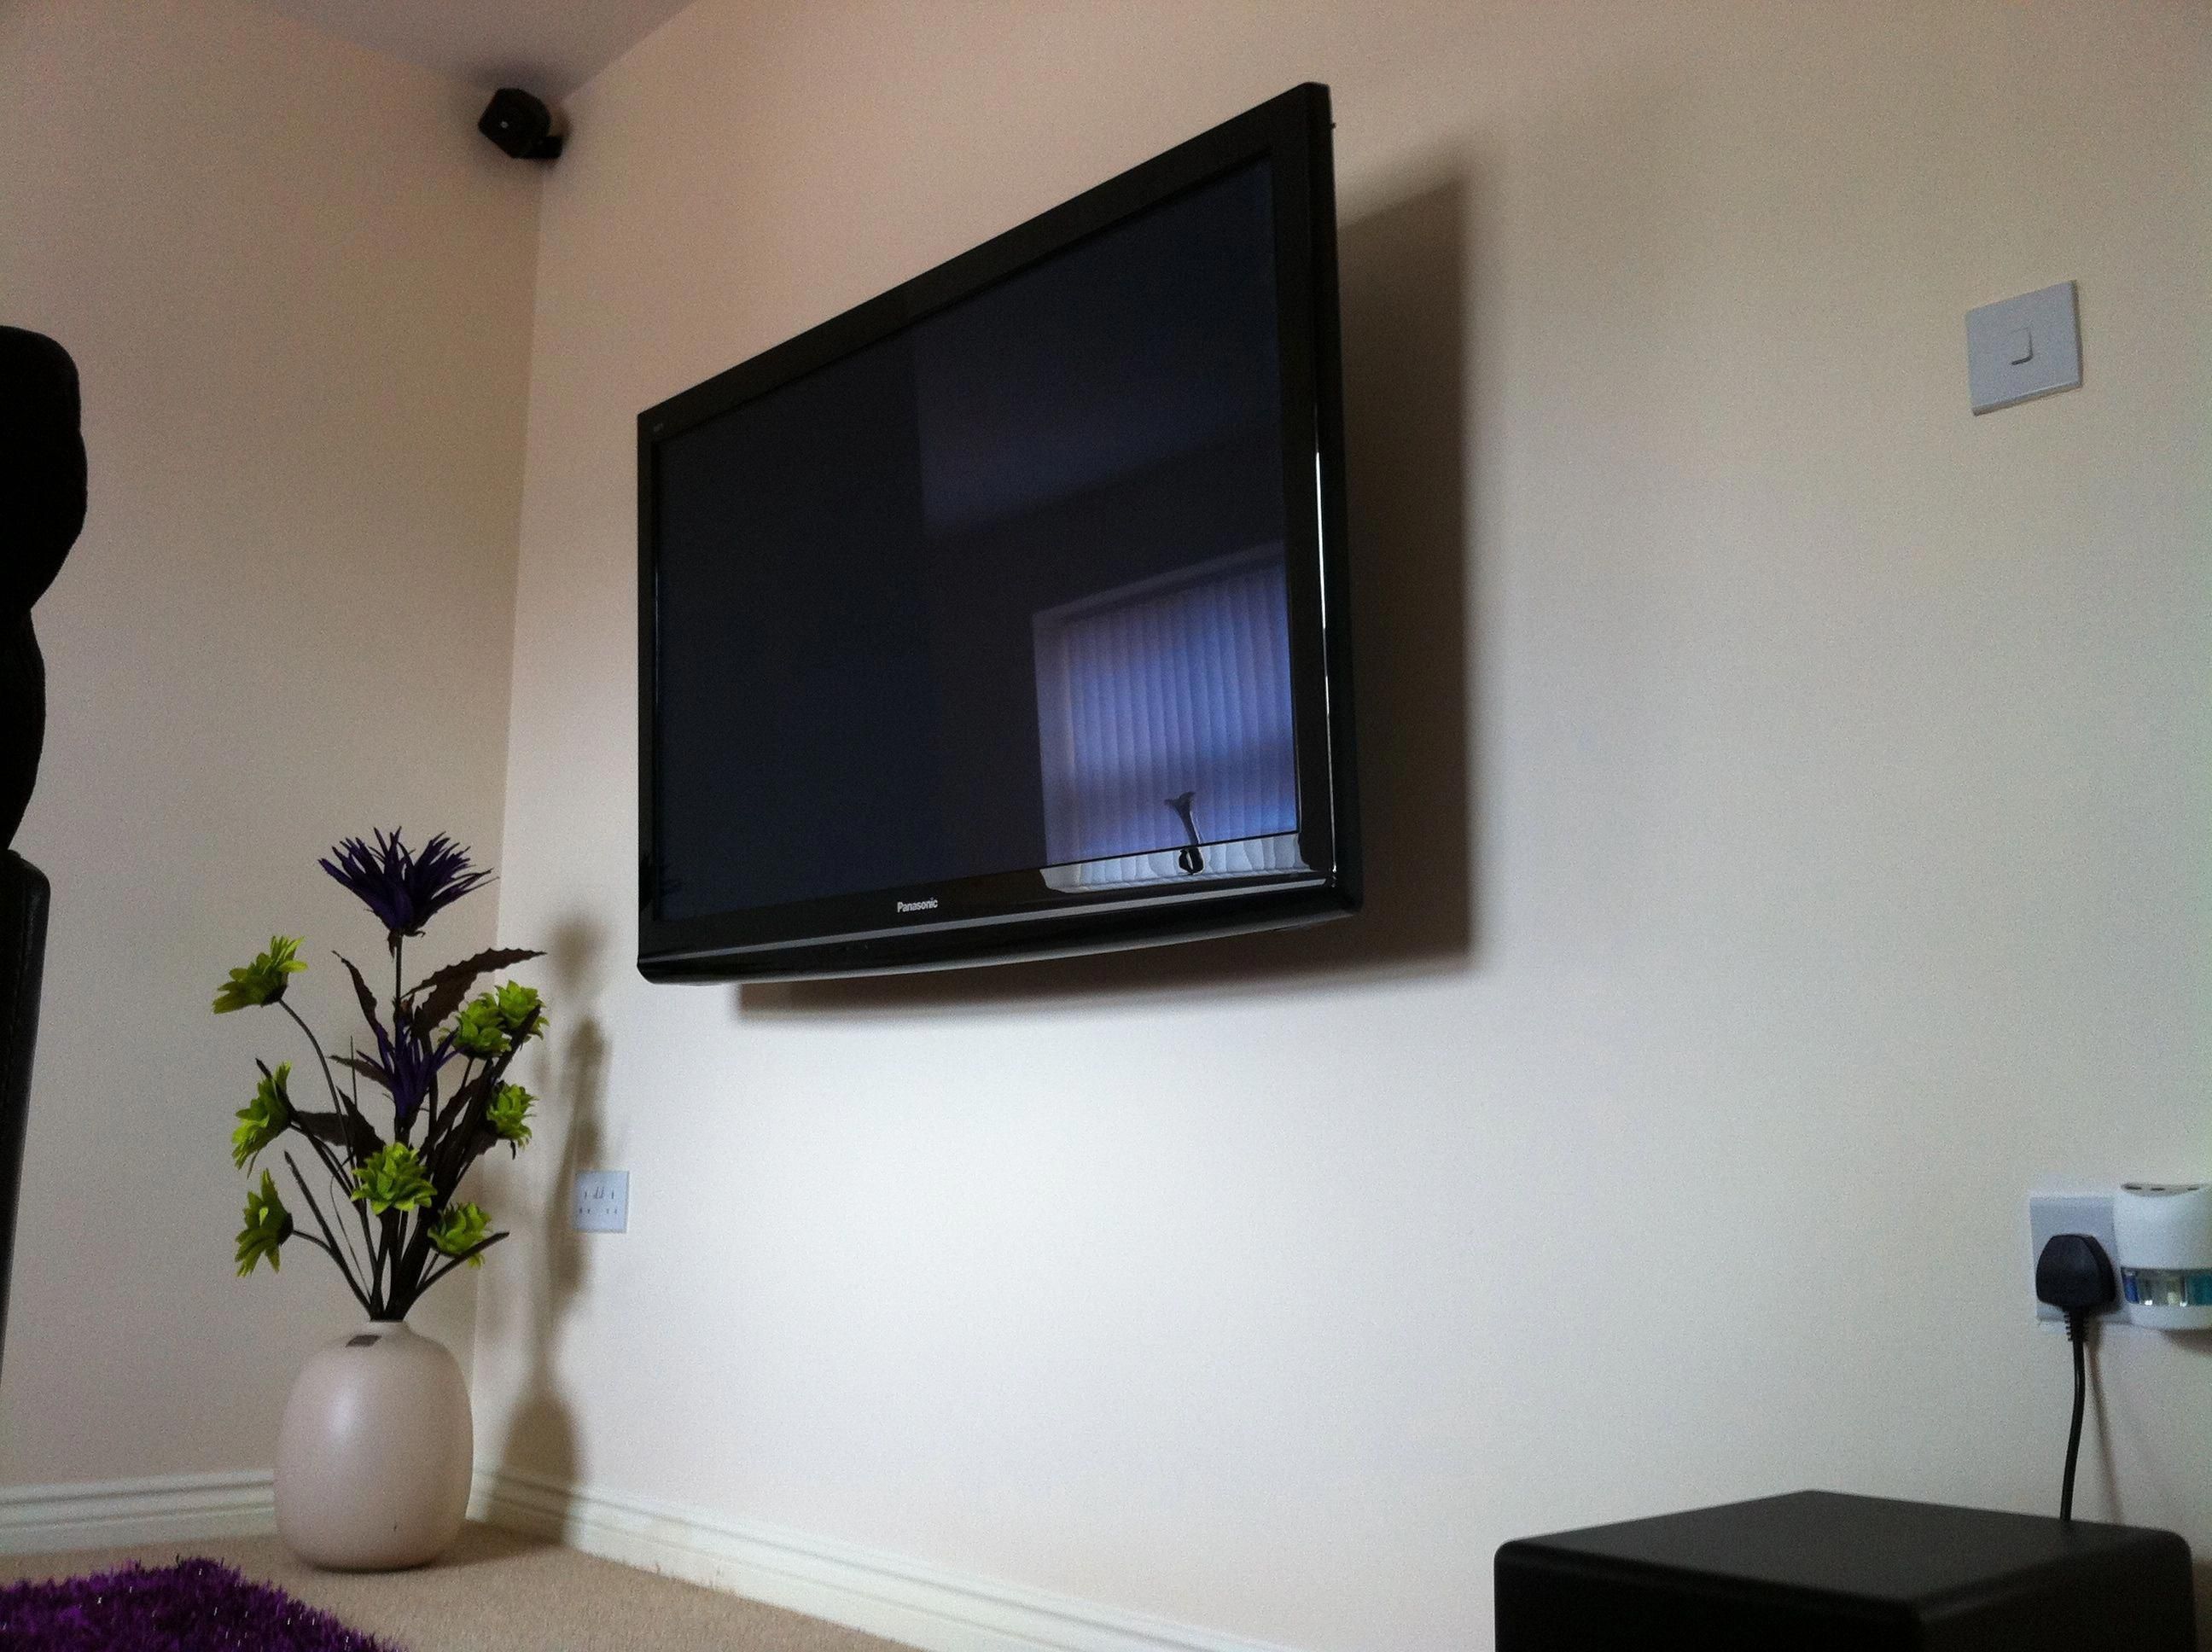 Навеска около. Телевизор на стене. Плоский телевизор на стену. Стол для телевизора. Плазма на стене.